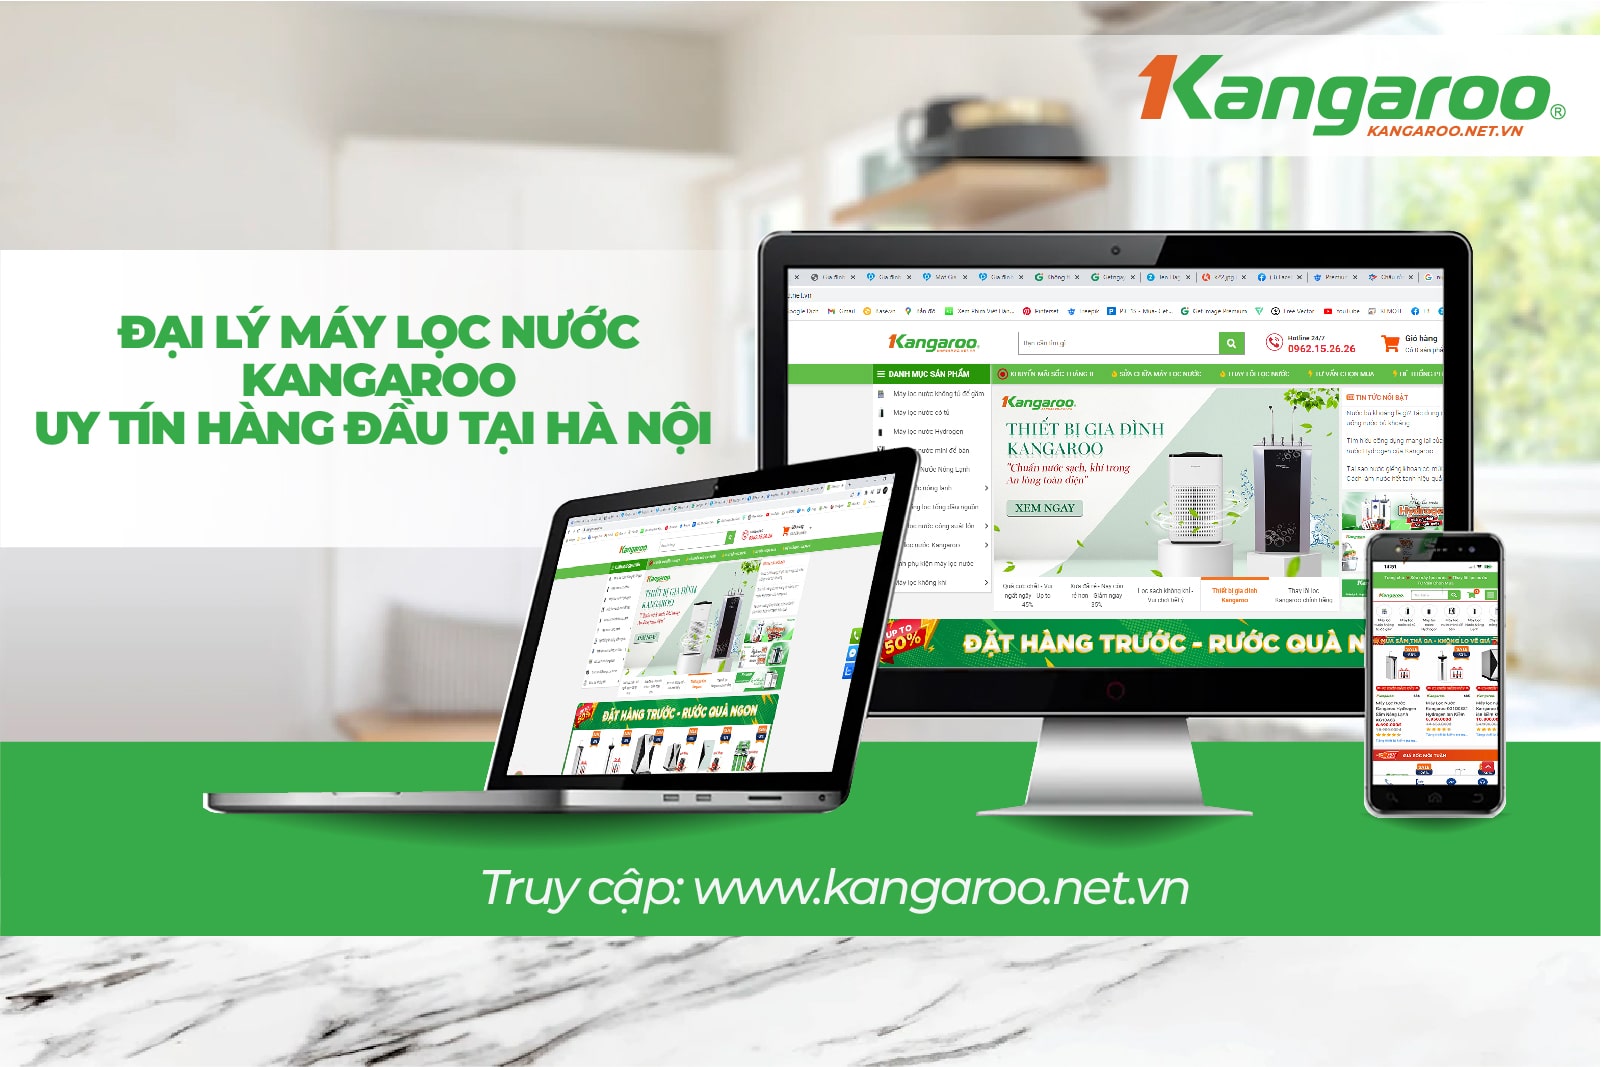 Kangaroo.net.vn là địa chỉ được mọi nhà tin dùng 